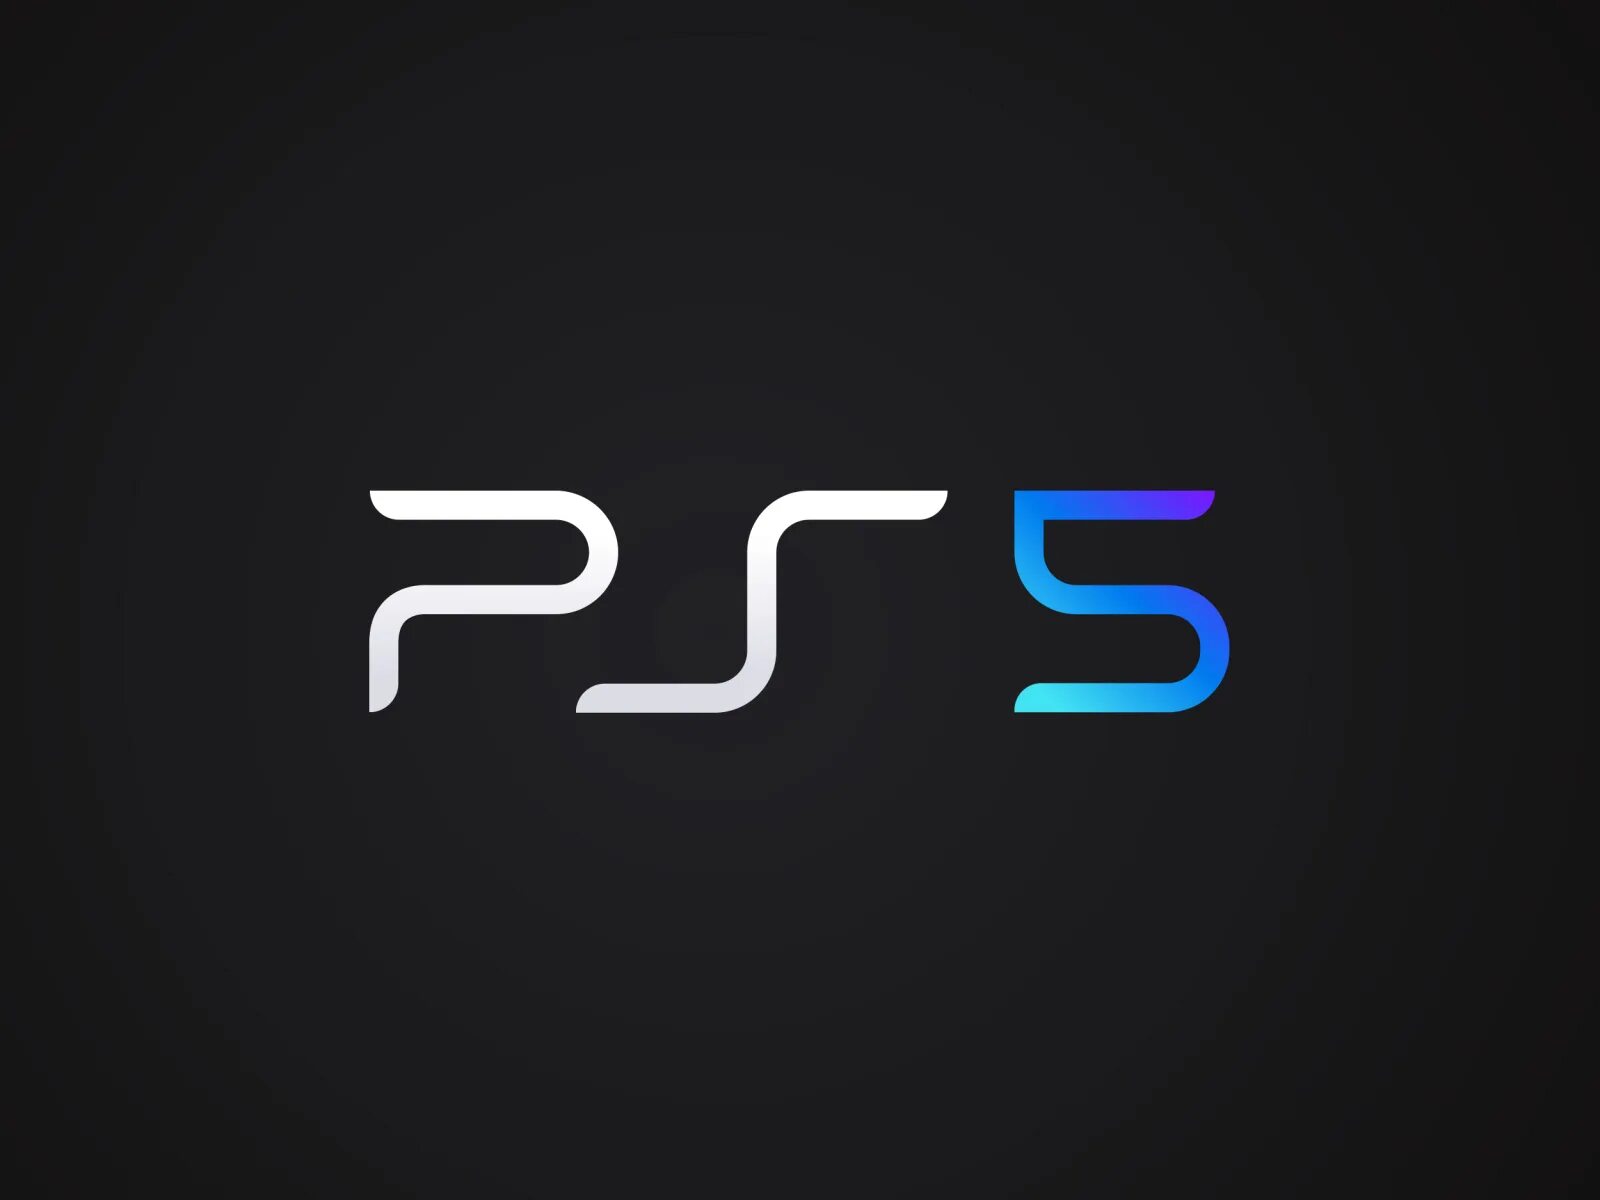 Sony ps5 logo. Sony PLAYSTATION 5. Sony PLAYSTATION 5 лого. Ps4 ps5 логотип. Обмен ps5